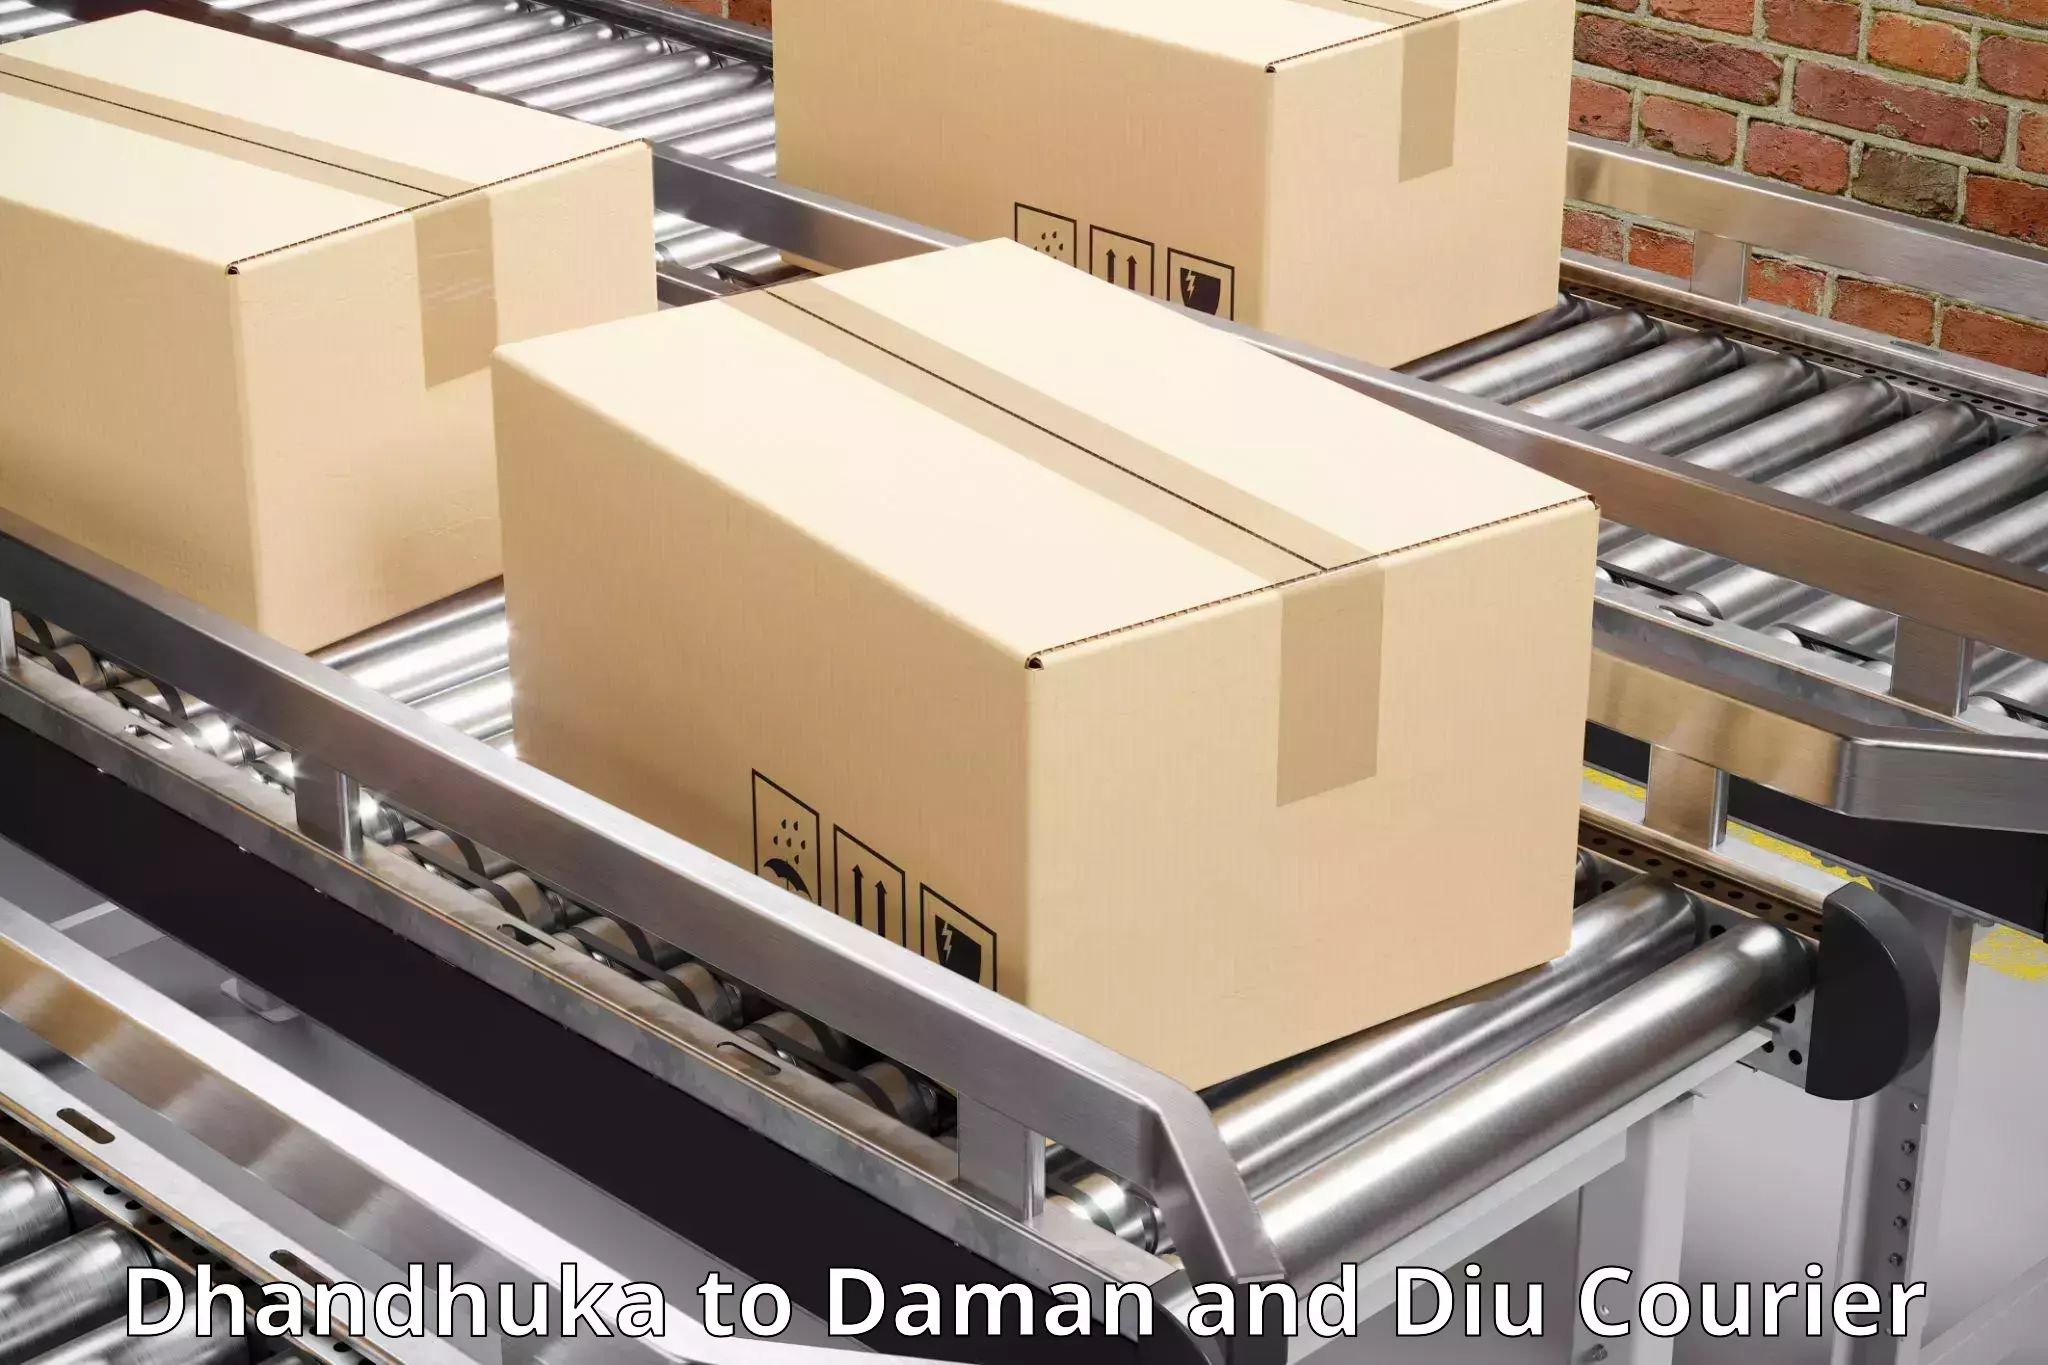 On-demand shipping options Dhandhuka to Daman